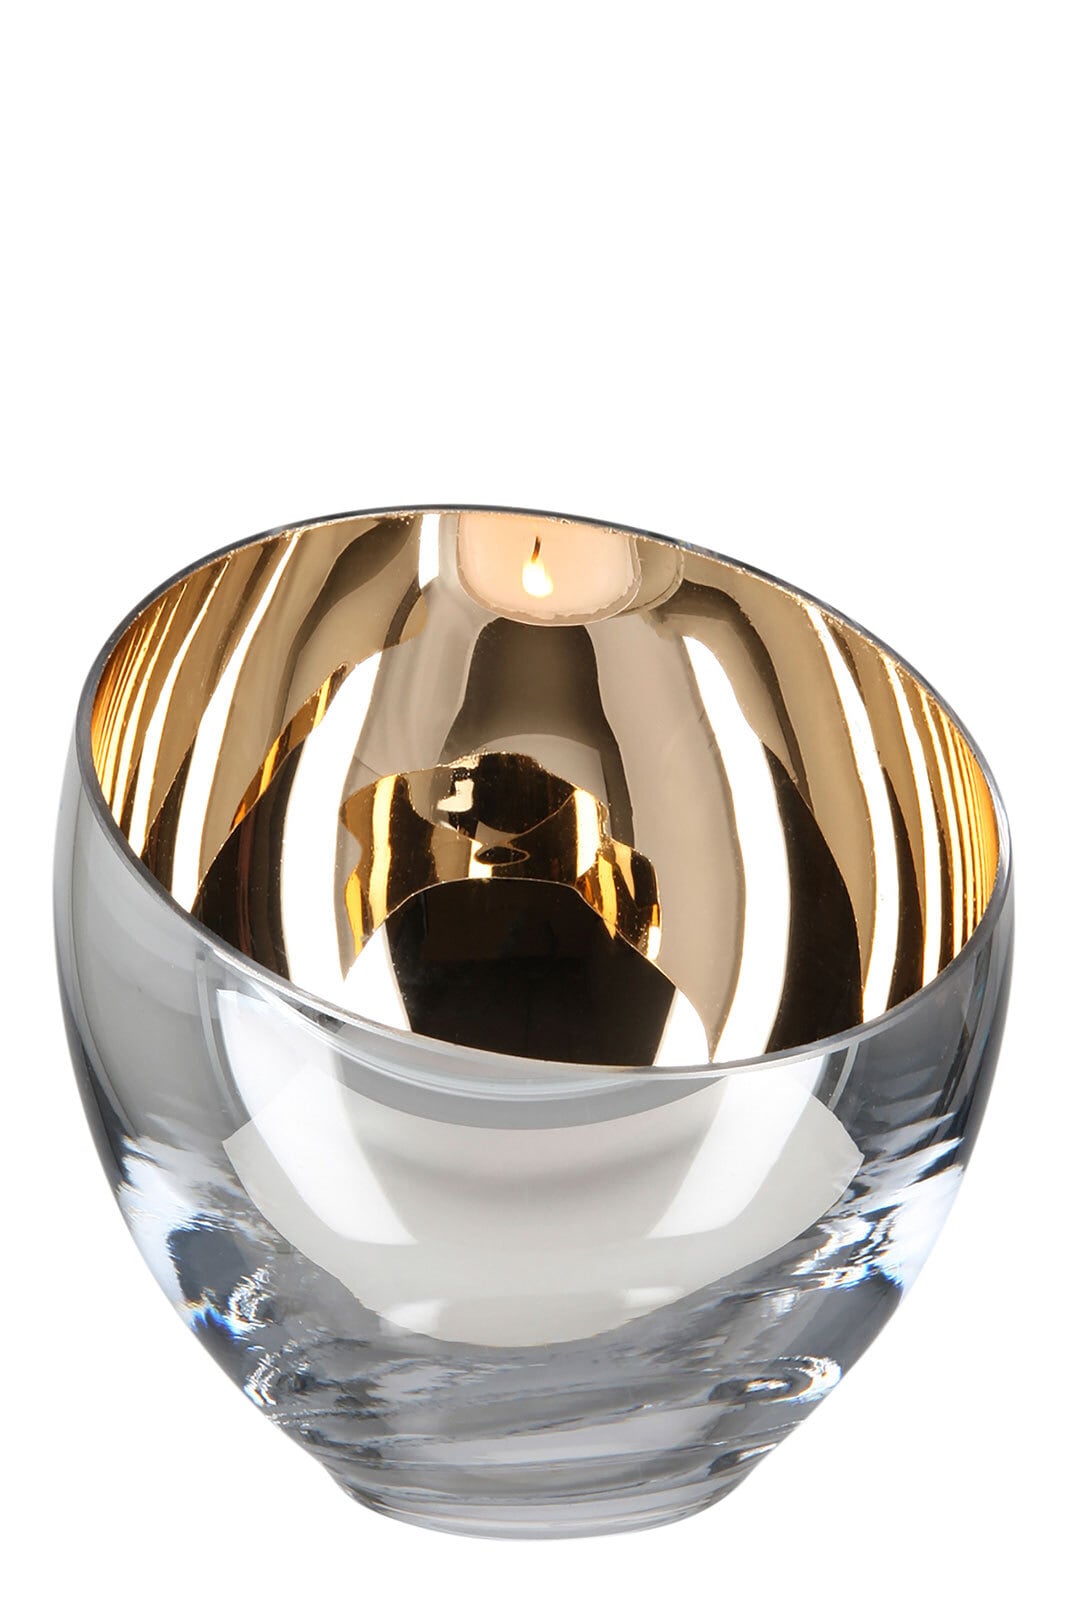 Fink Teelichthalter CANDY 11 cm champagnerfarbig 